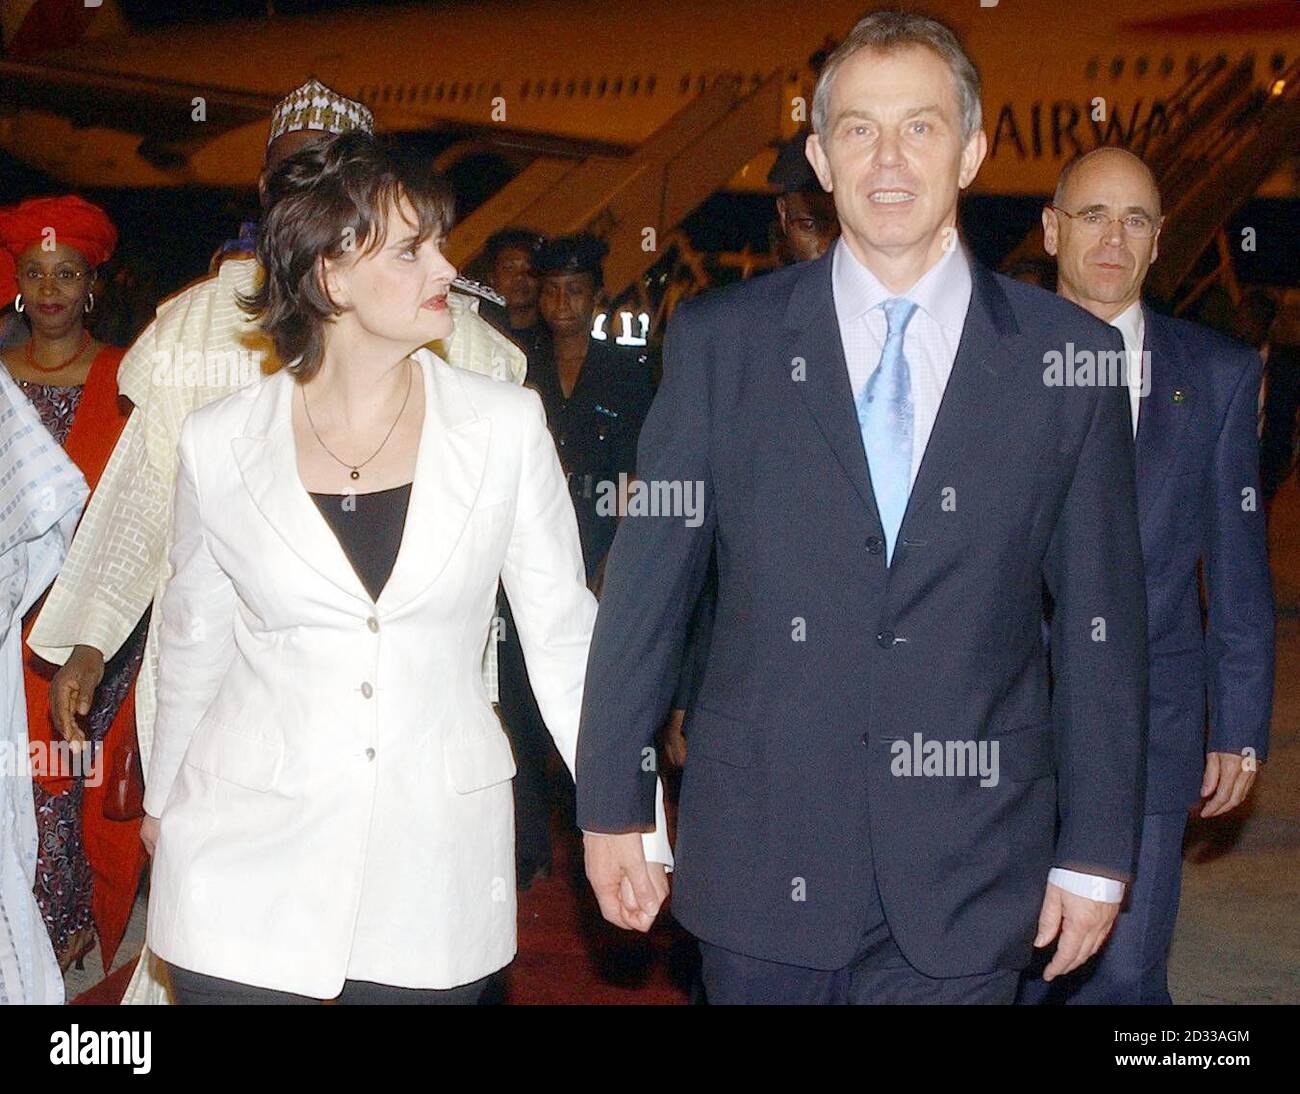 Der britische Premierminister Tony Blair kommt in Begleitung seiner Frau Cherie zum Treffen der Regierungschefs des Commonwealth, das morgen (Freitag) beginnt, nach Abuja, Nigeria. Stockfoto